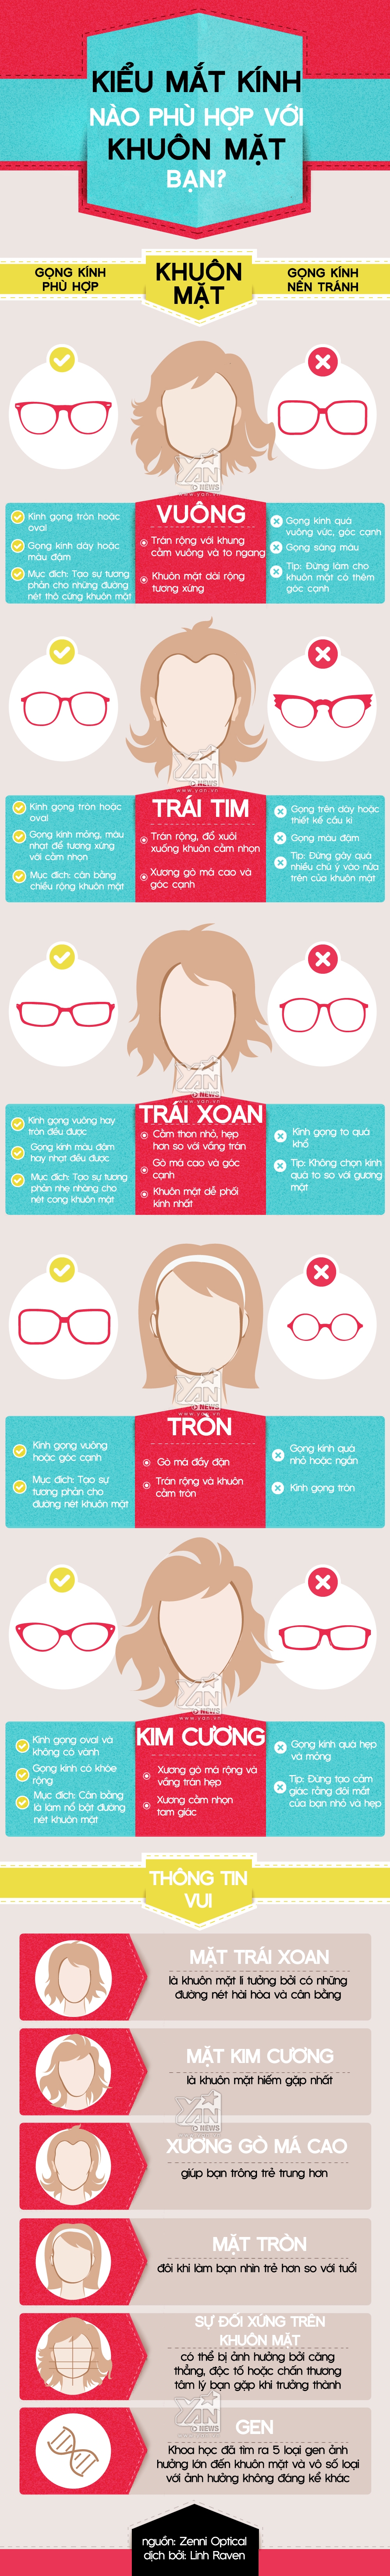 [Infographic] Kiểu mắt kính nào hợp với khuôn mặt bạn?